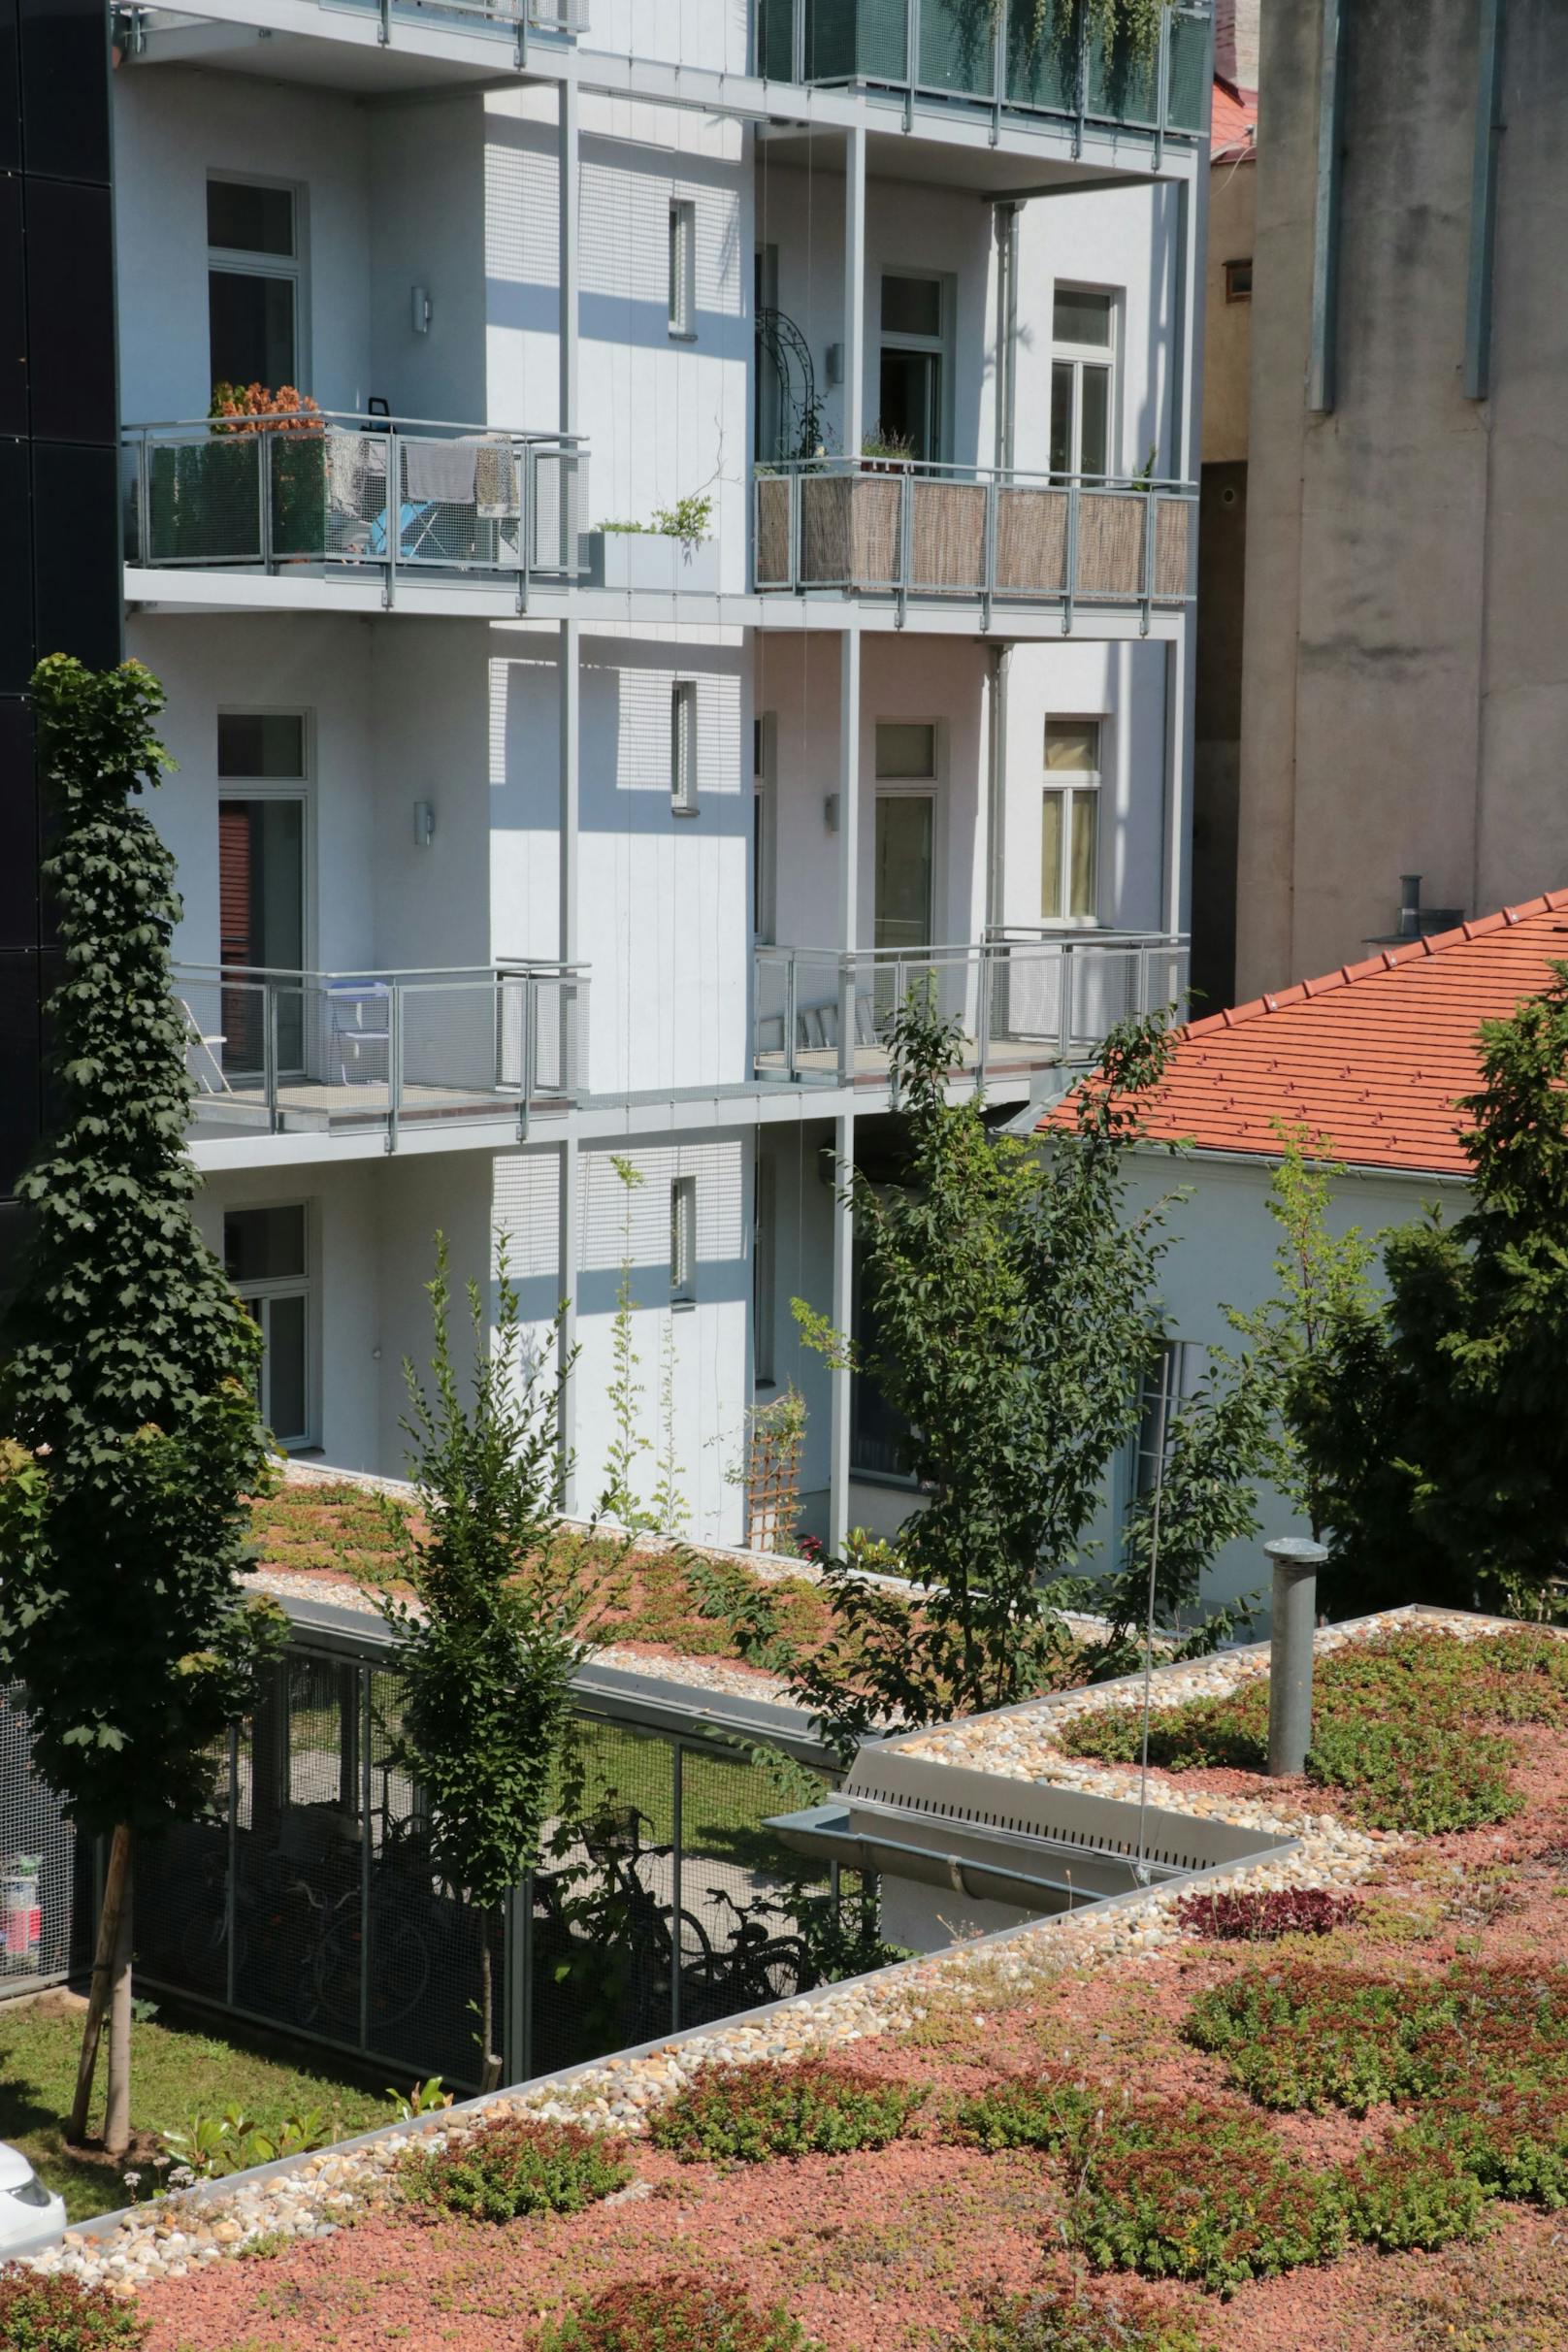 Photovoltaik-Element an der Liftfassade, Dachbegrünung und Grünflächen im Innenhof.